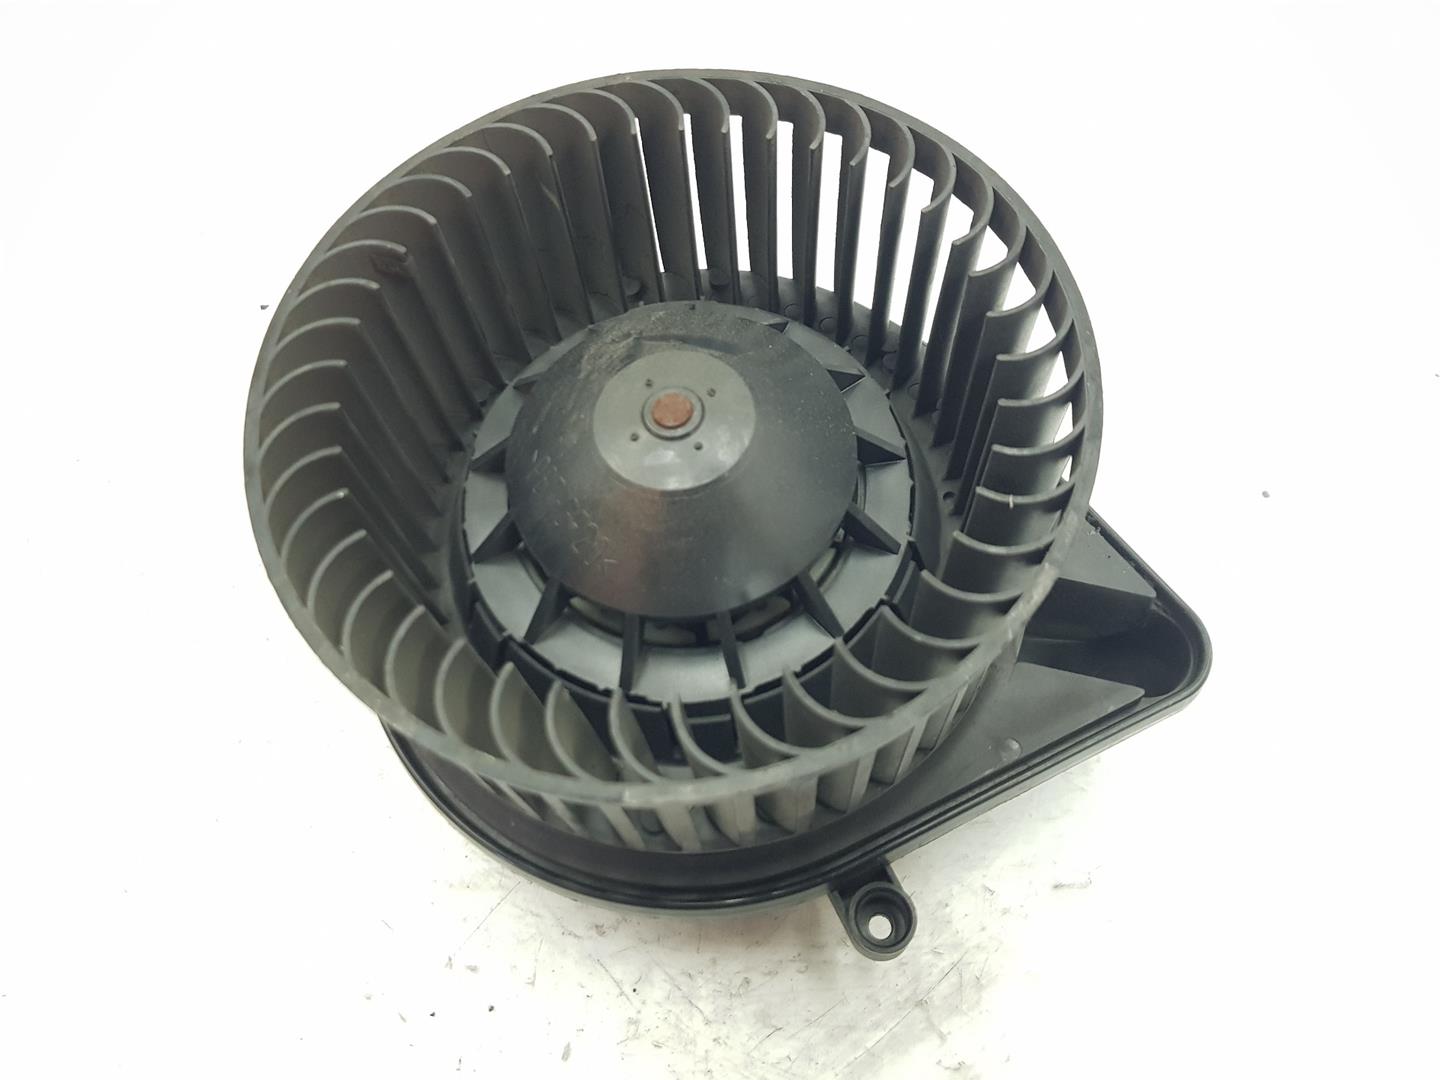 AUDI A4 B6/8E (2000-2005) Heater Blower Fan 8E1820021B, 5508100, 0235035 19817248